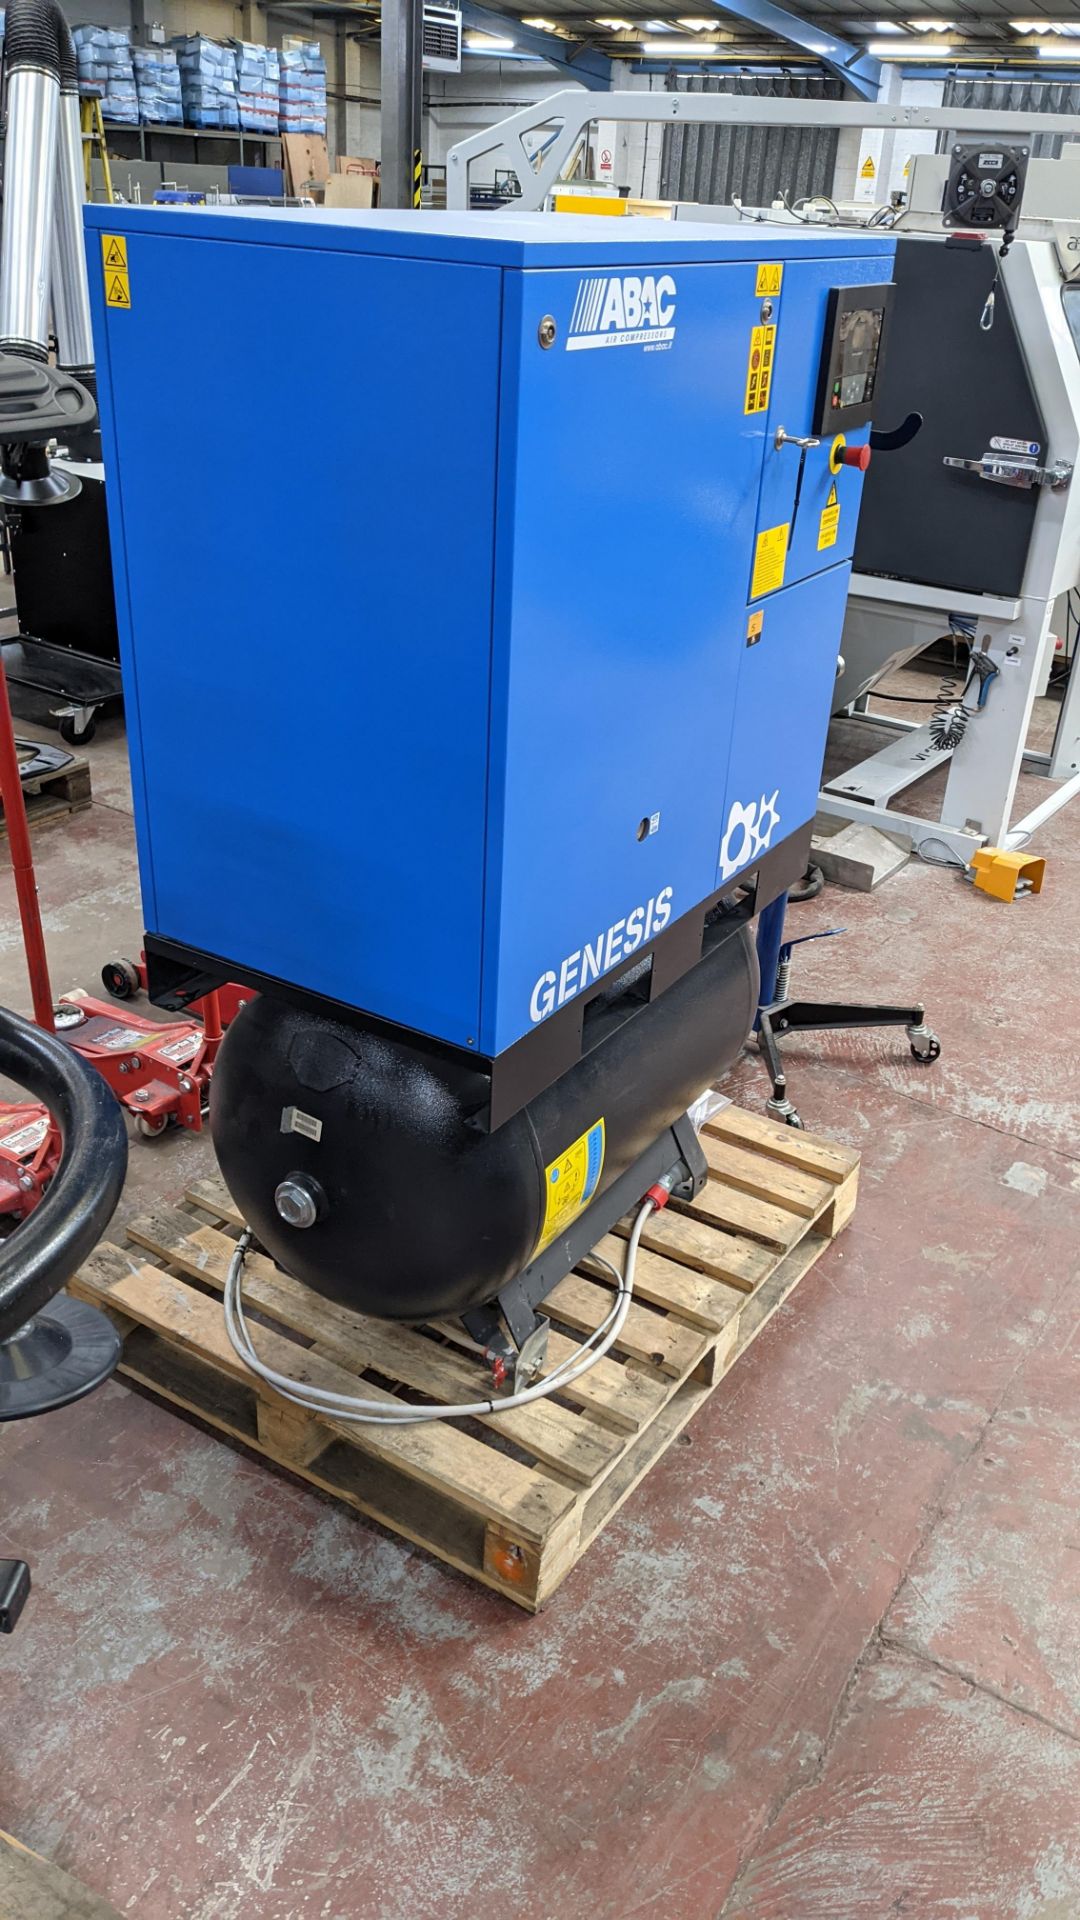 2019 ABAC Genesis 11kW 10 bar 270 litre compressor system - Image 6 of 20